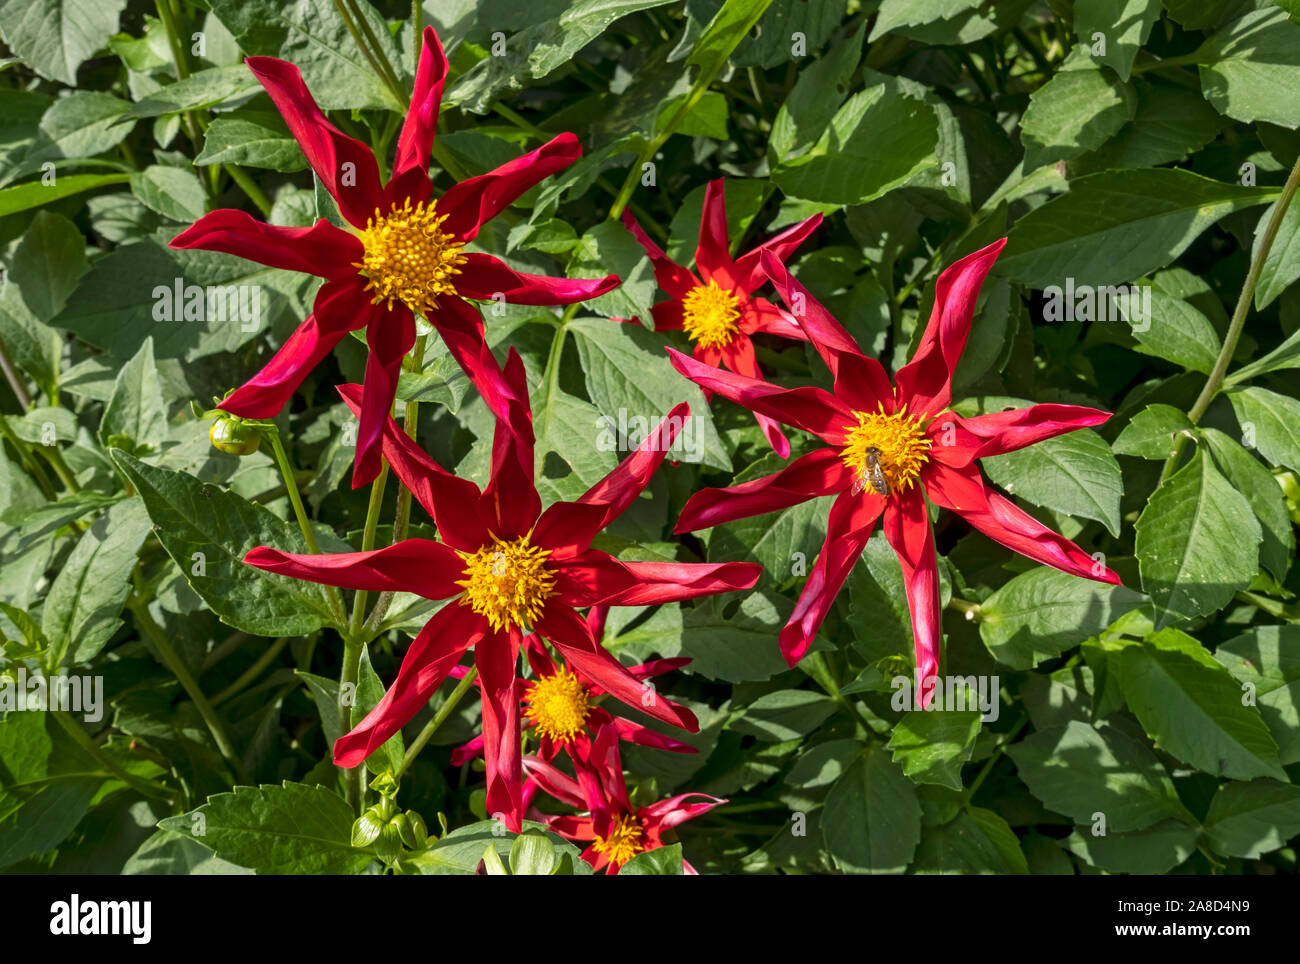 Nahaufnahme von roten Stern Dahlia Blume Blumen blühenden Dahlien in einem Cottage Garten im Sommer England Großbritannien GB Großbritannien Stockfoto